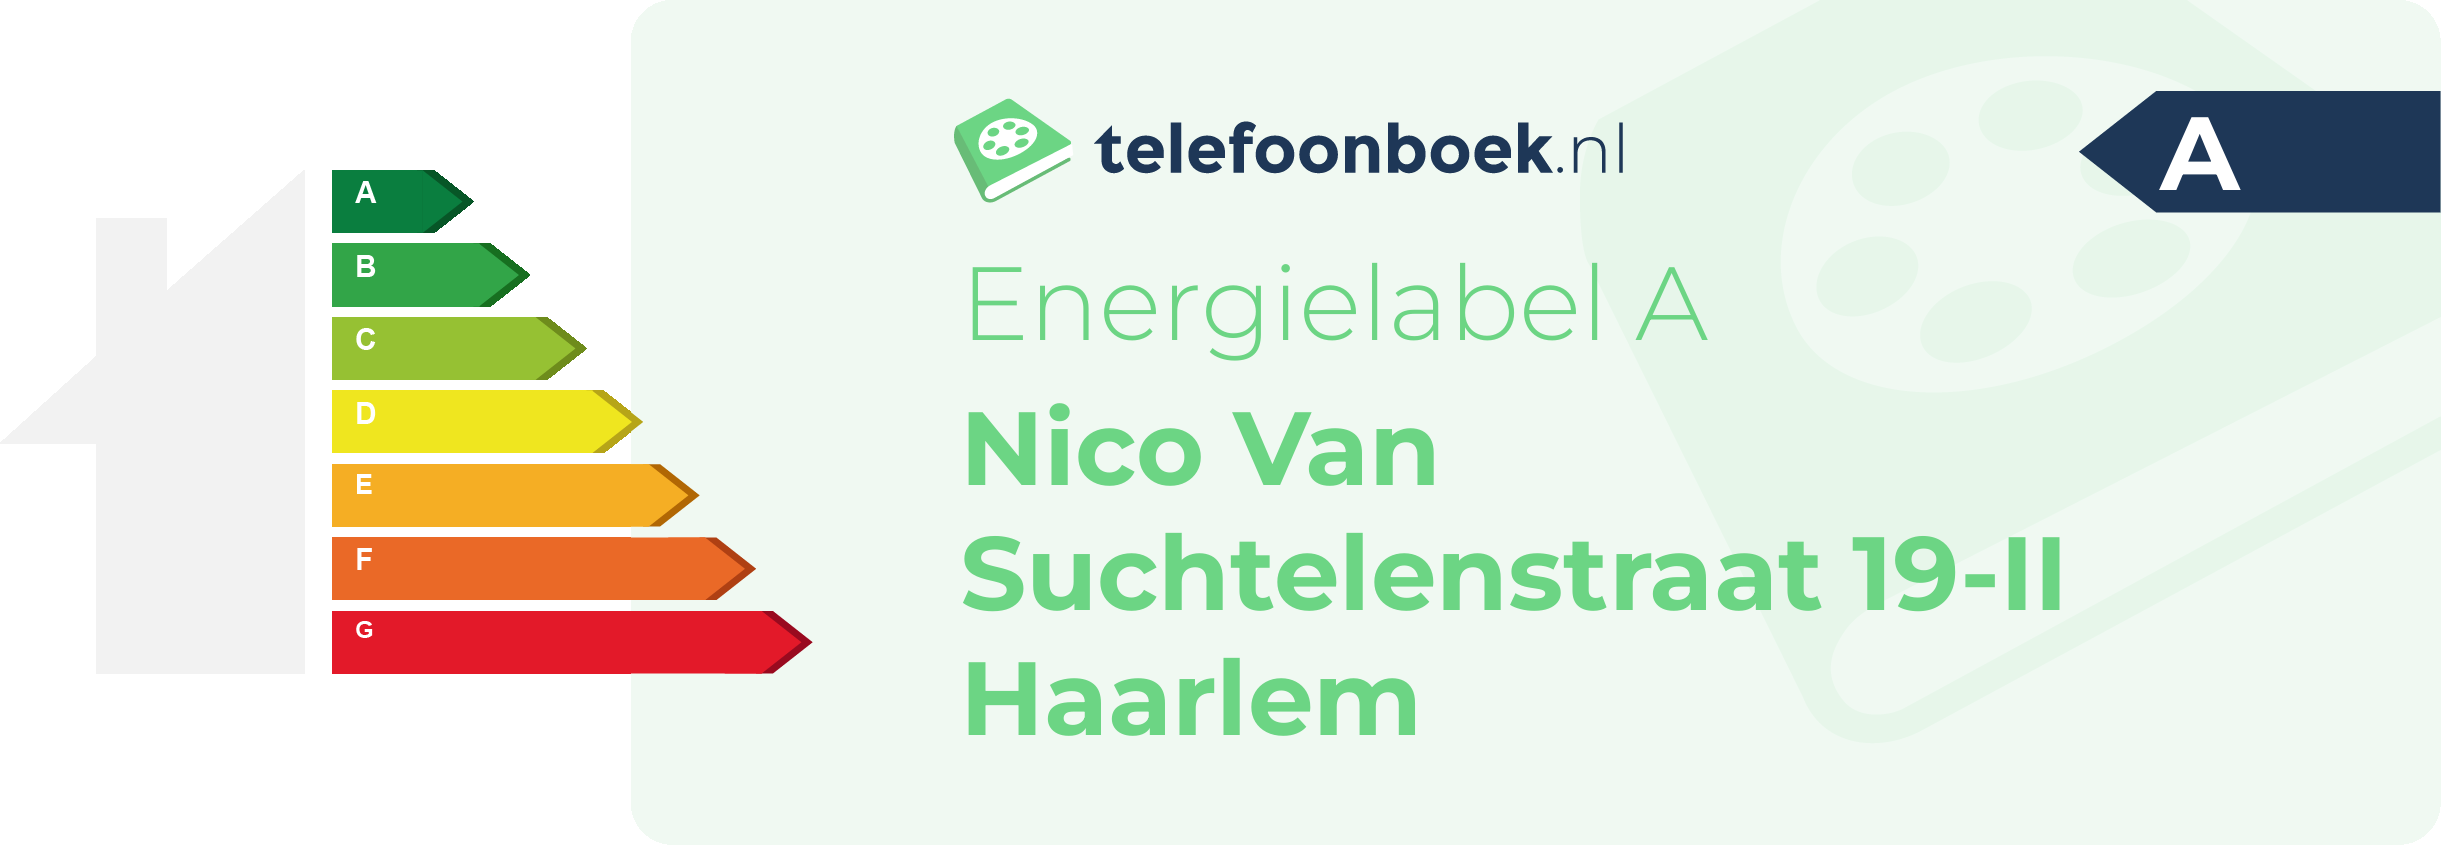 Energielabel Nico Van Suchtelenstraat 19-II Haarlem